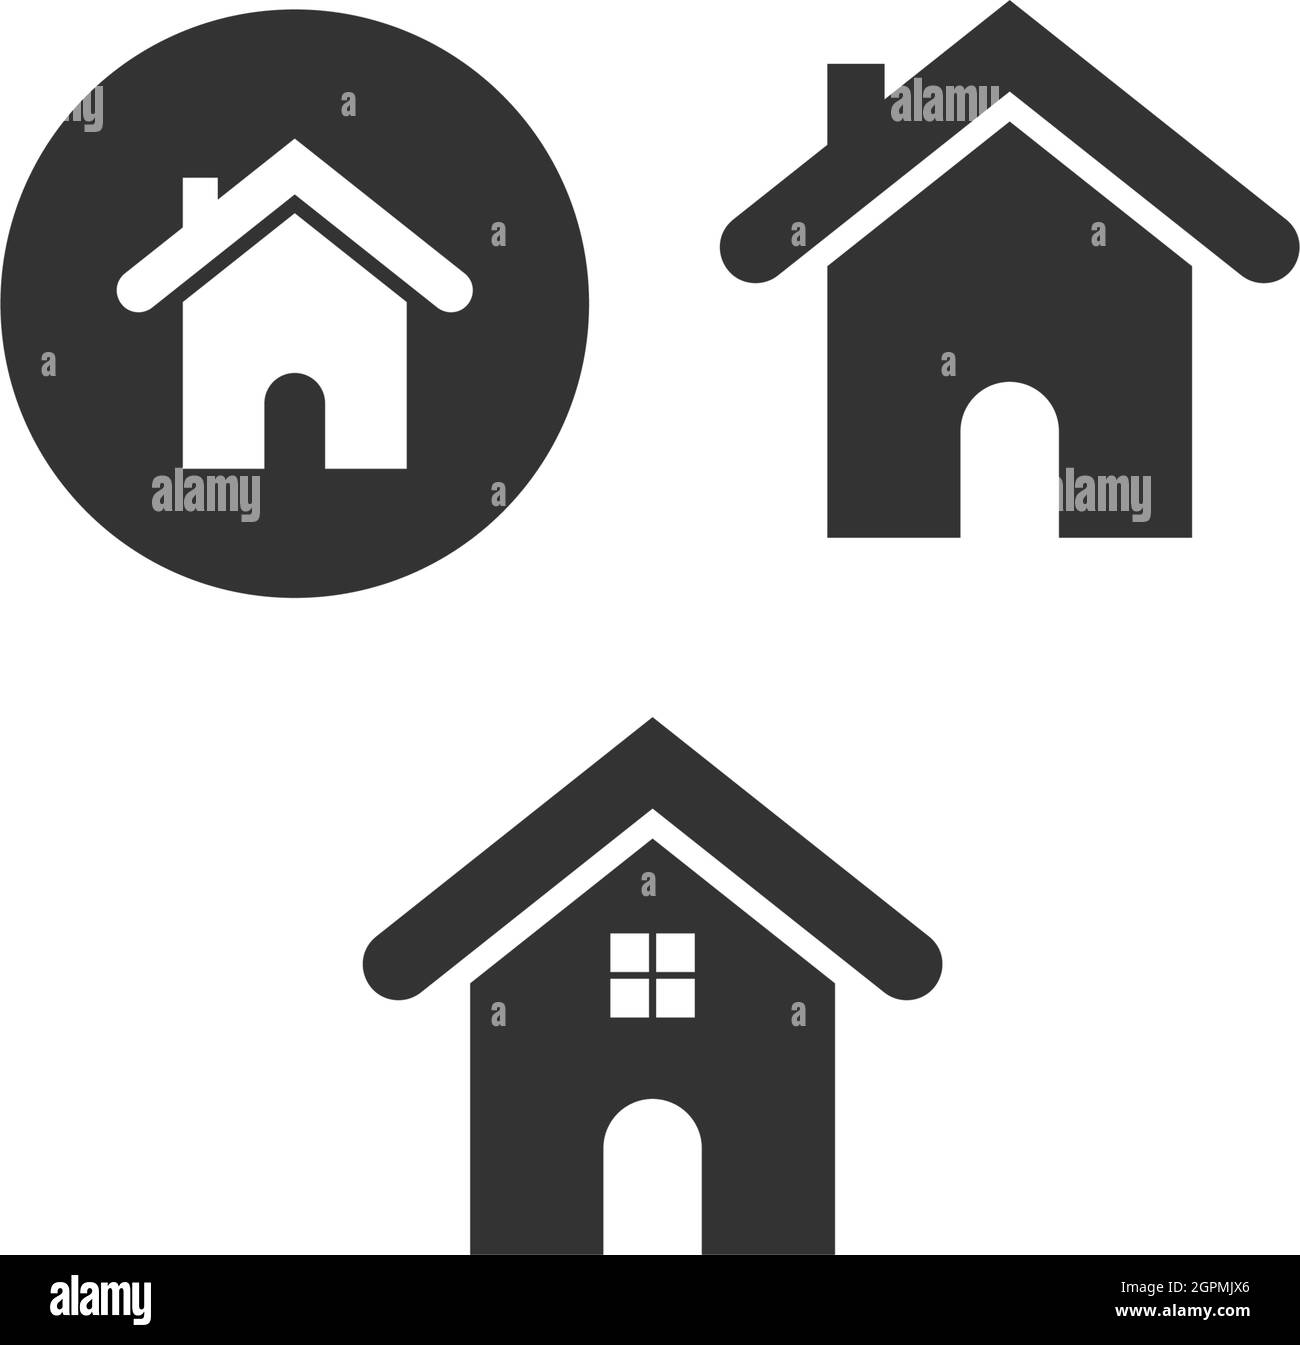 House icon logo simple design template vector Stock Vector